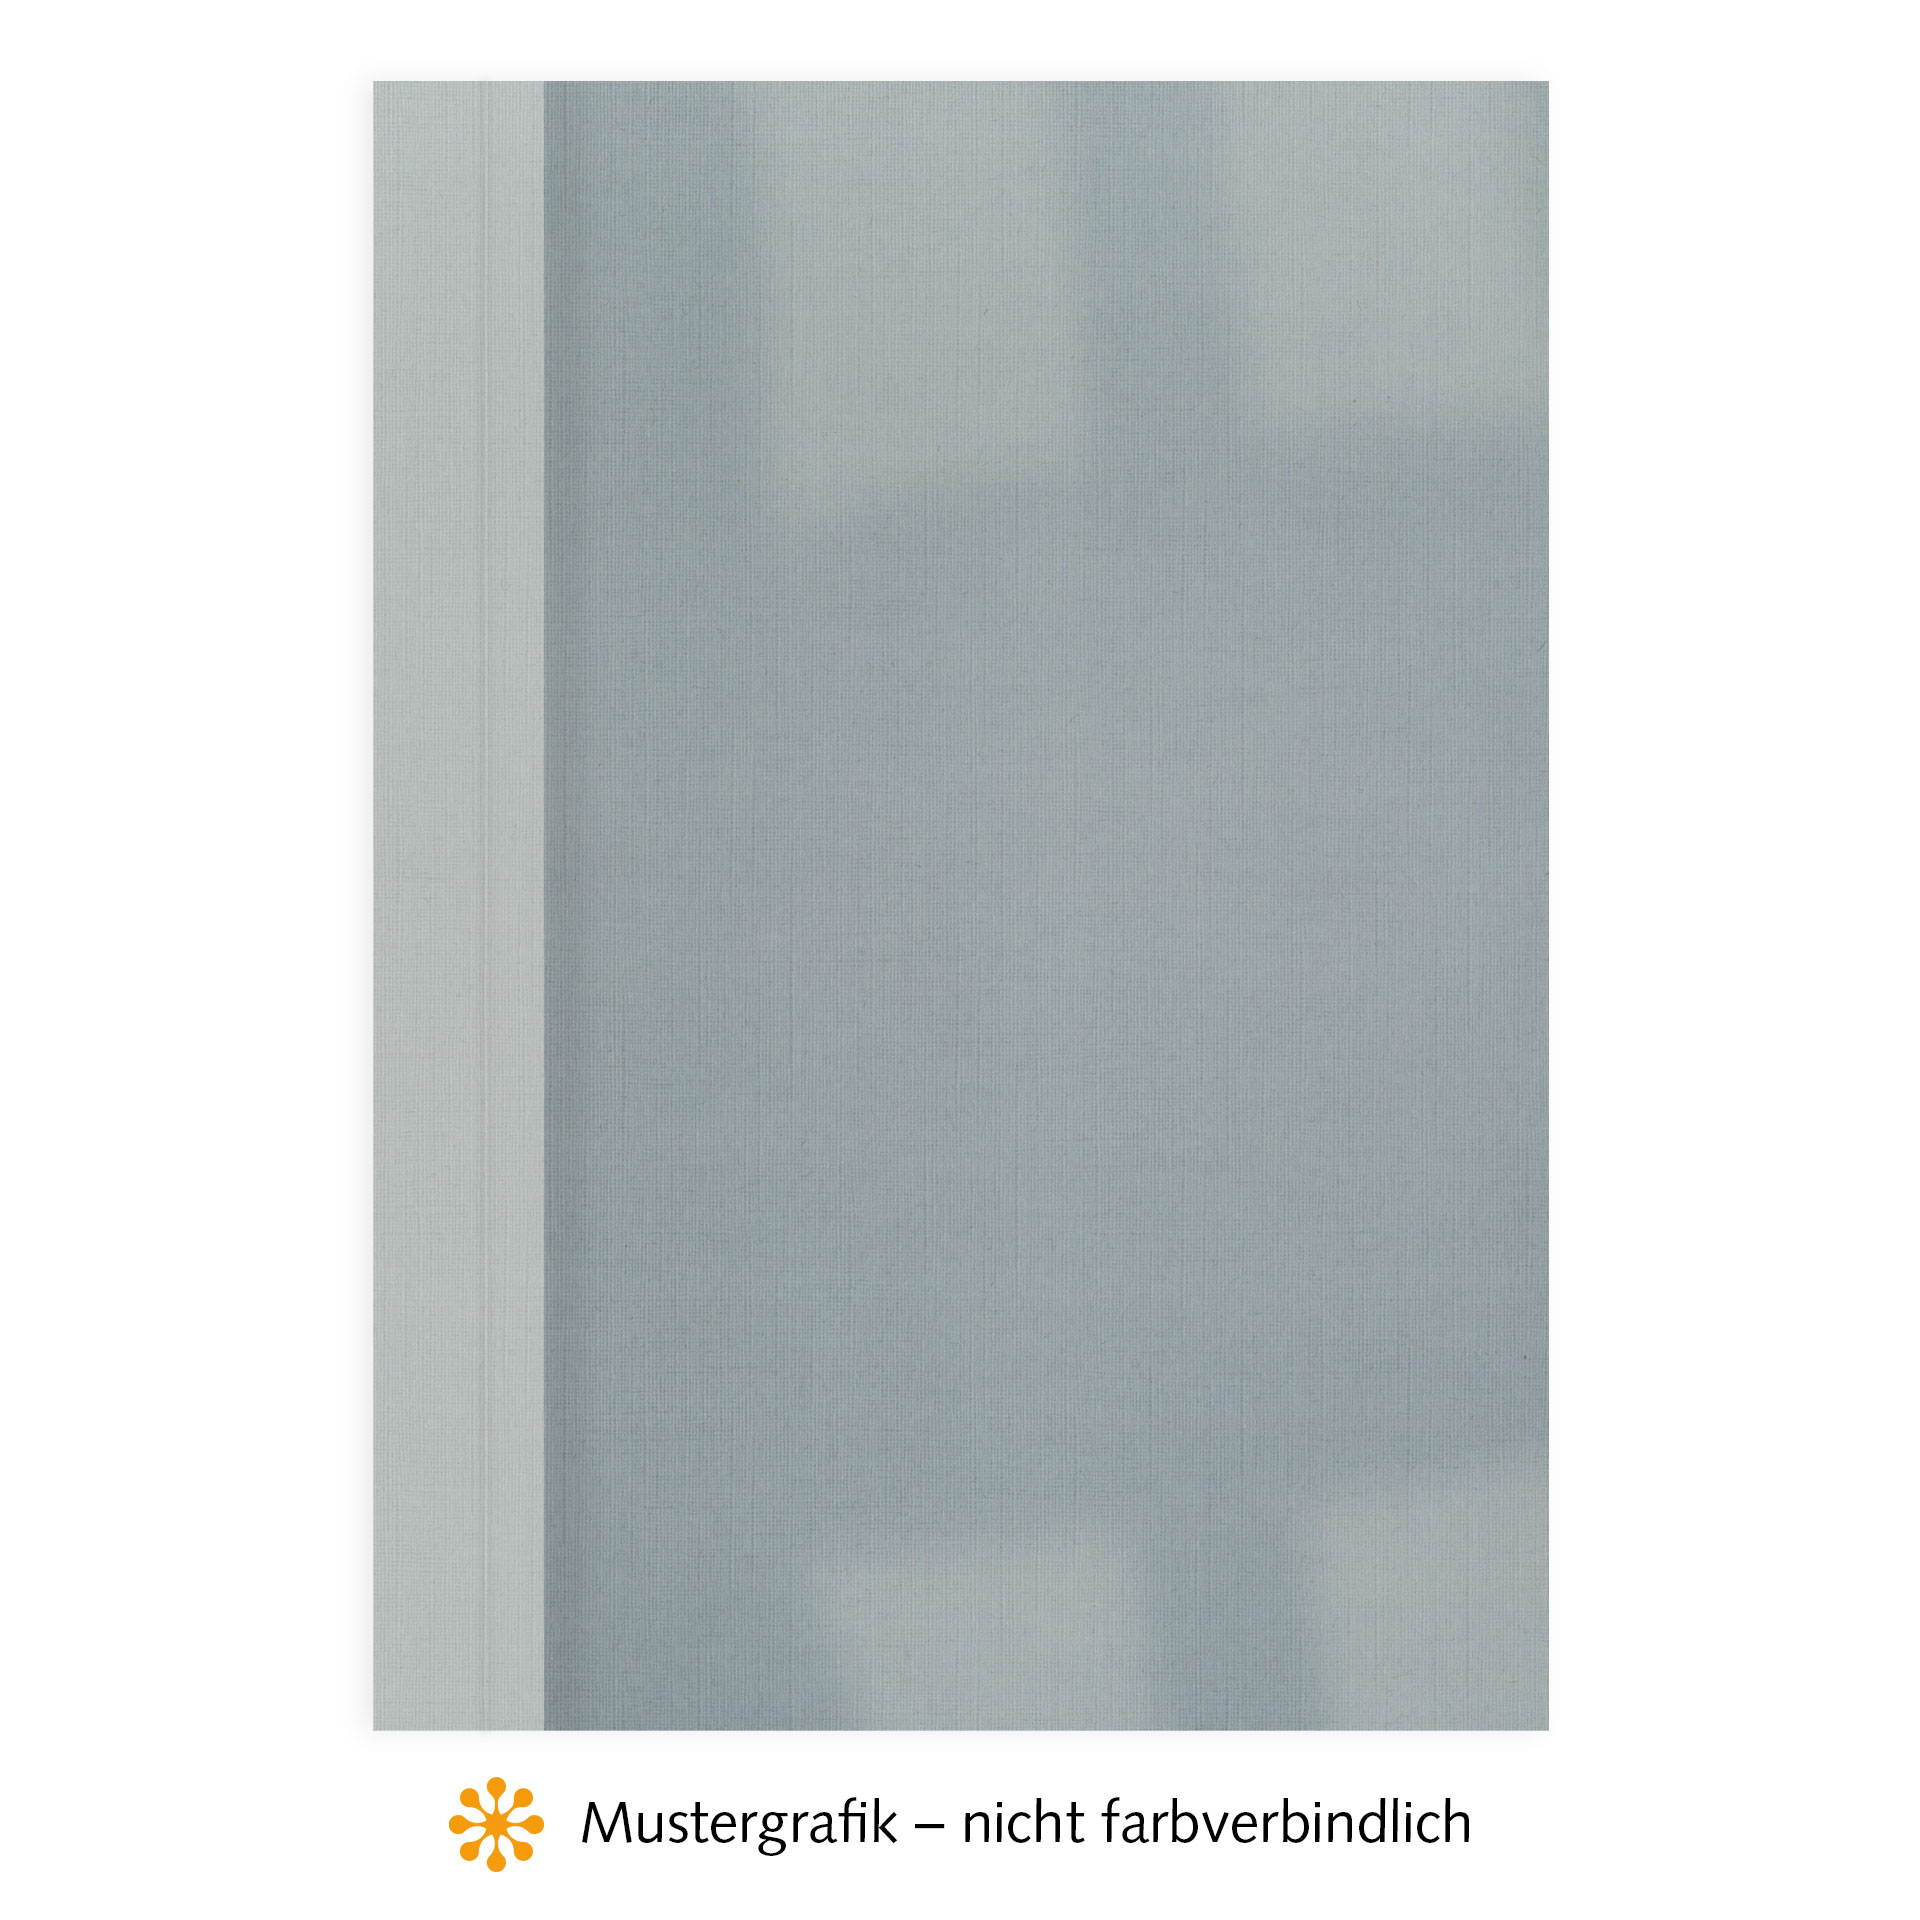 Ösenmappen DUO Cover, Vorderseite Folie KLAR transparent, Rückseite Karton Leinen, Silbergrau / Hellgrau, 3 mm, 21 bis 30 Blatt